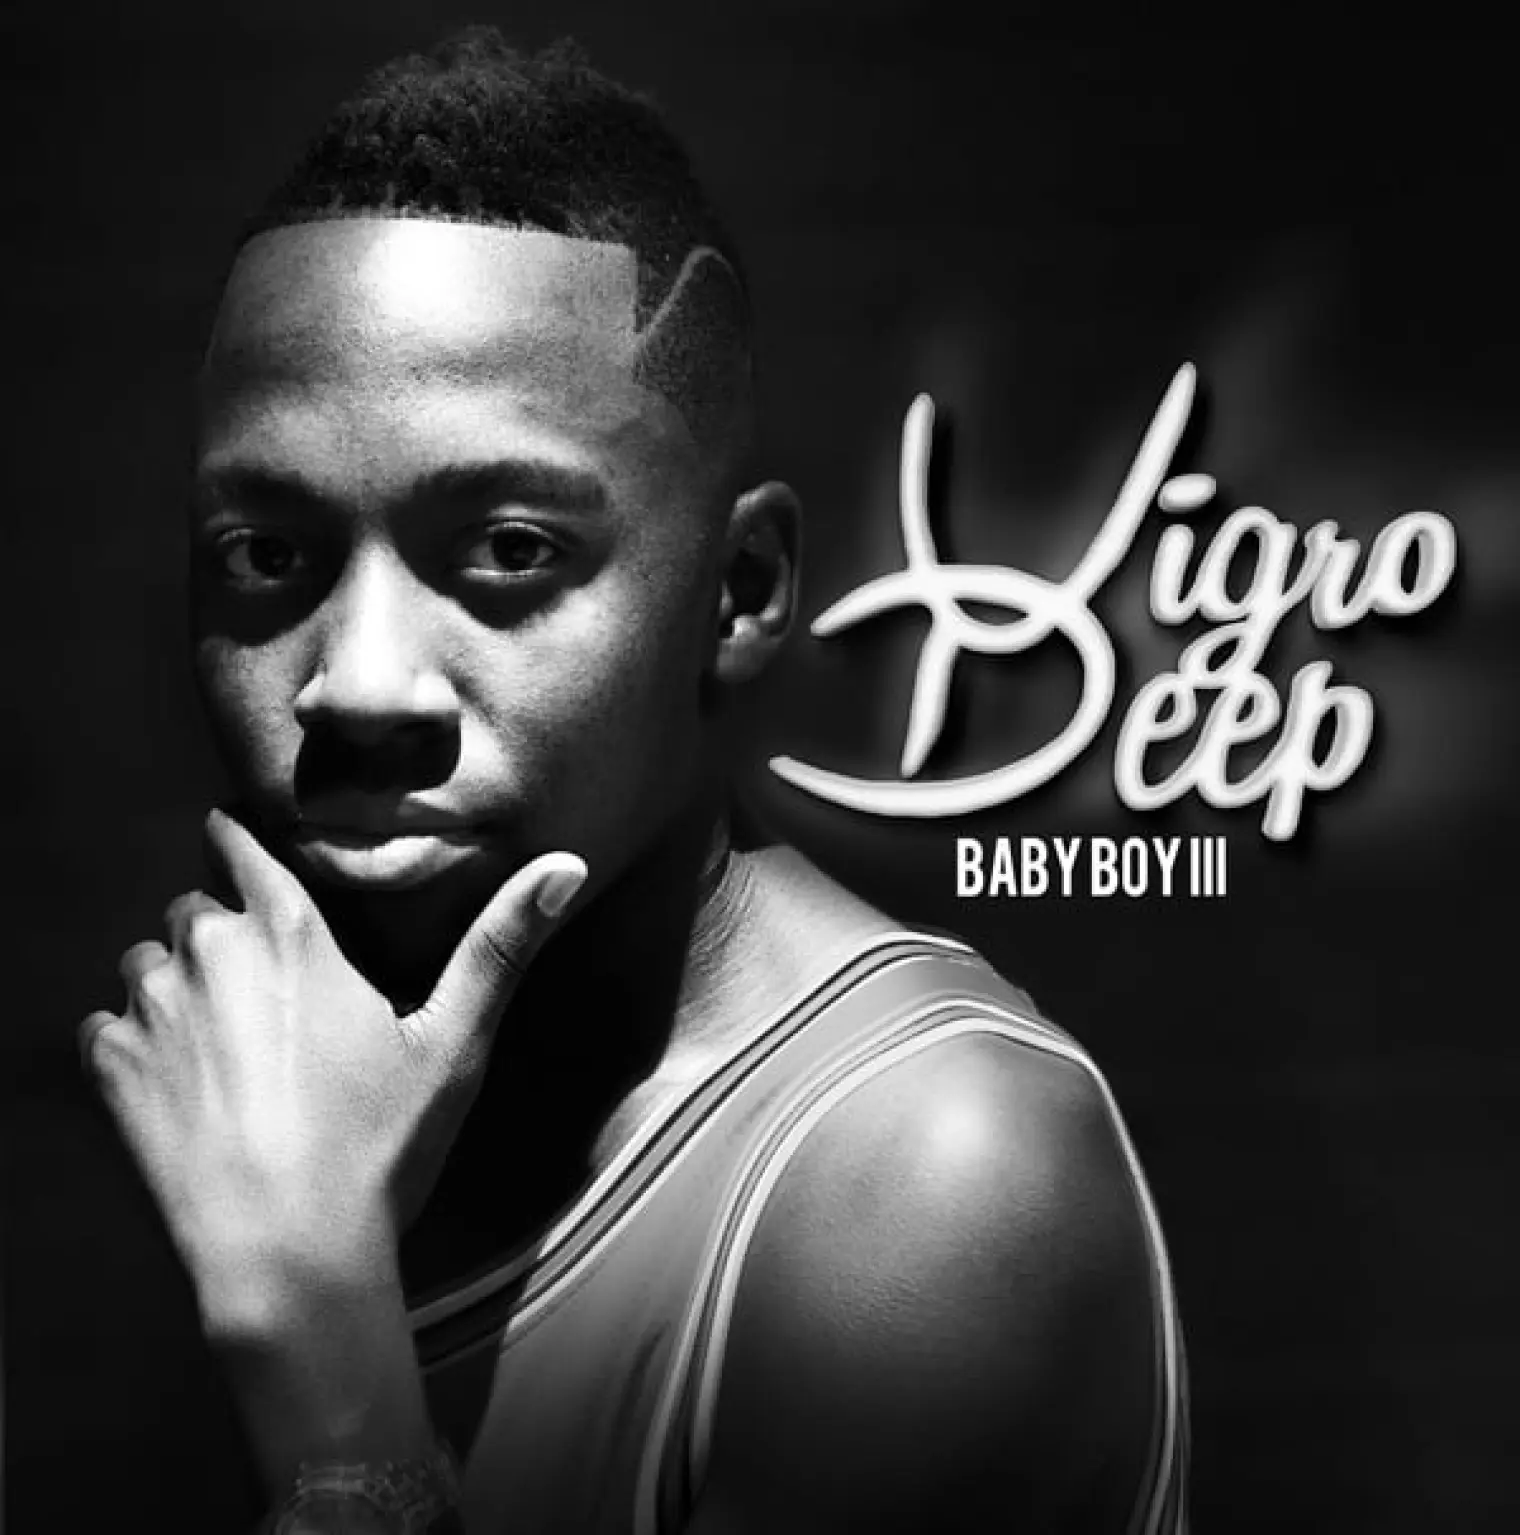 Baby Boy III -  Vigro Deep 